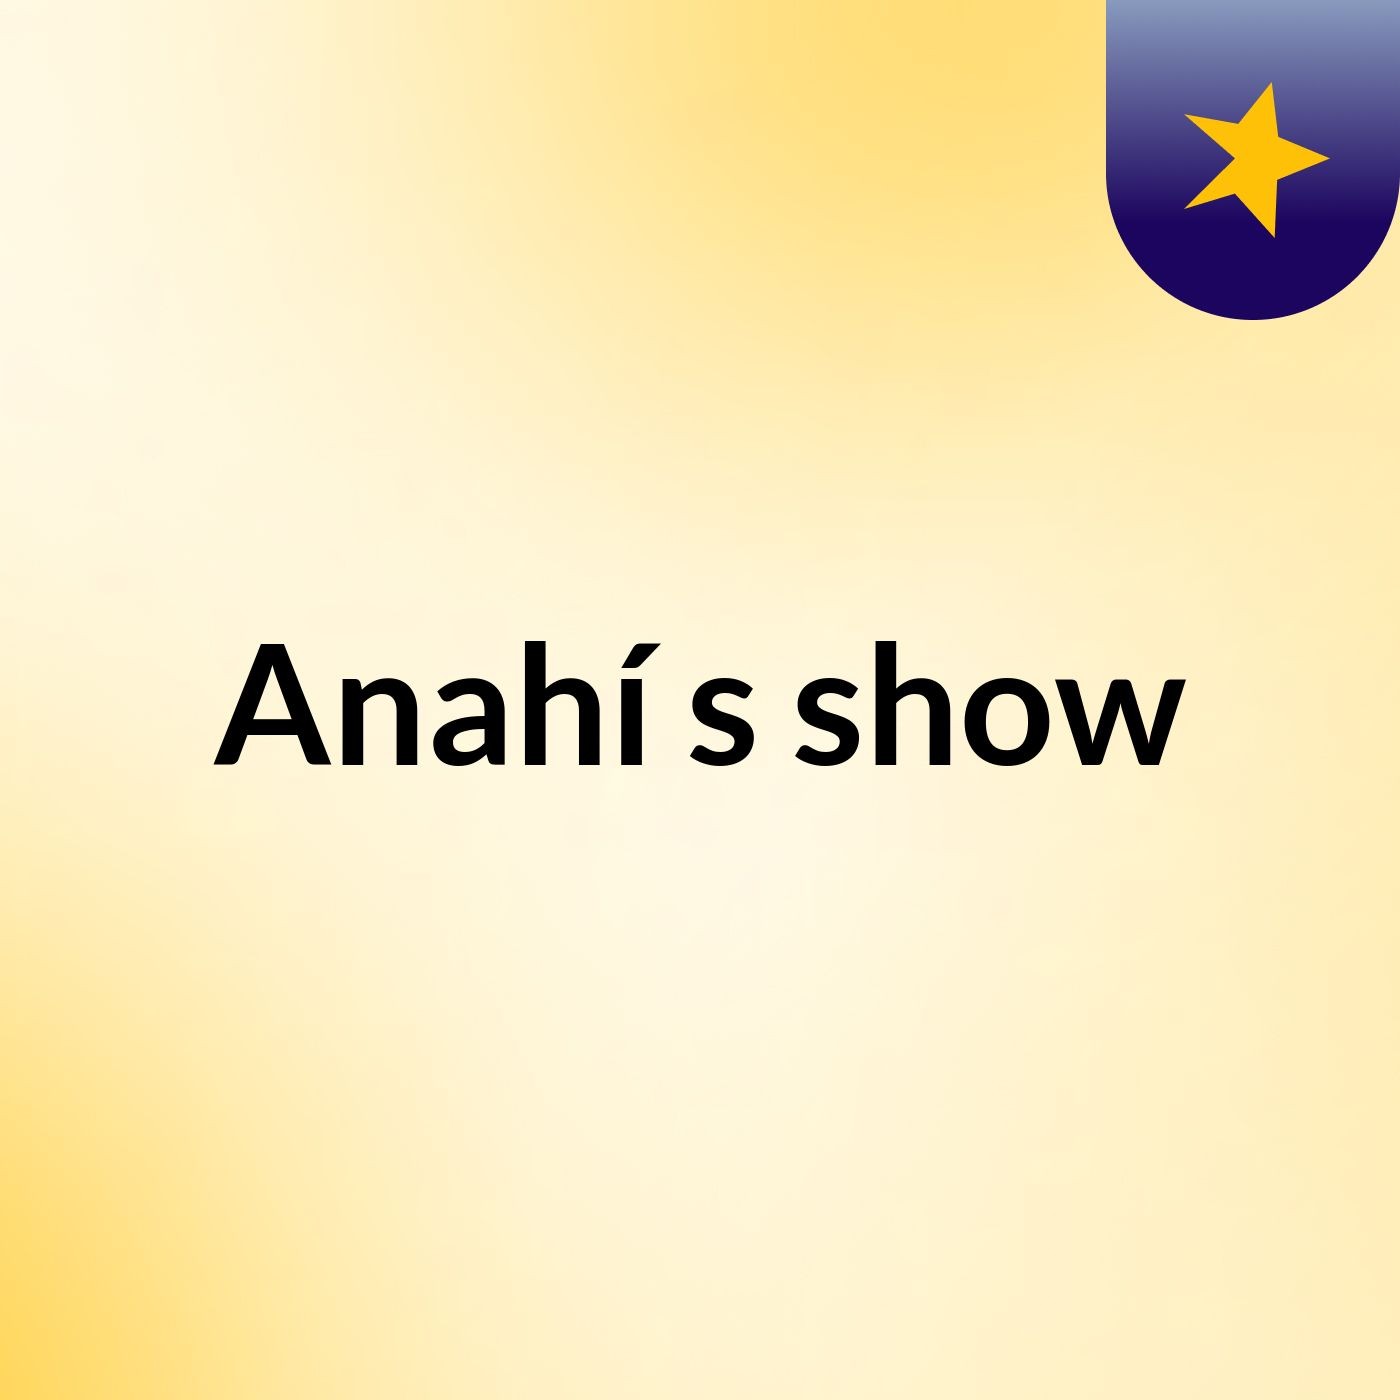 Anahí's show